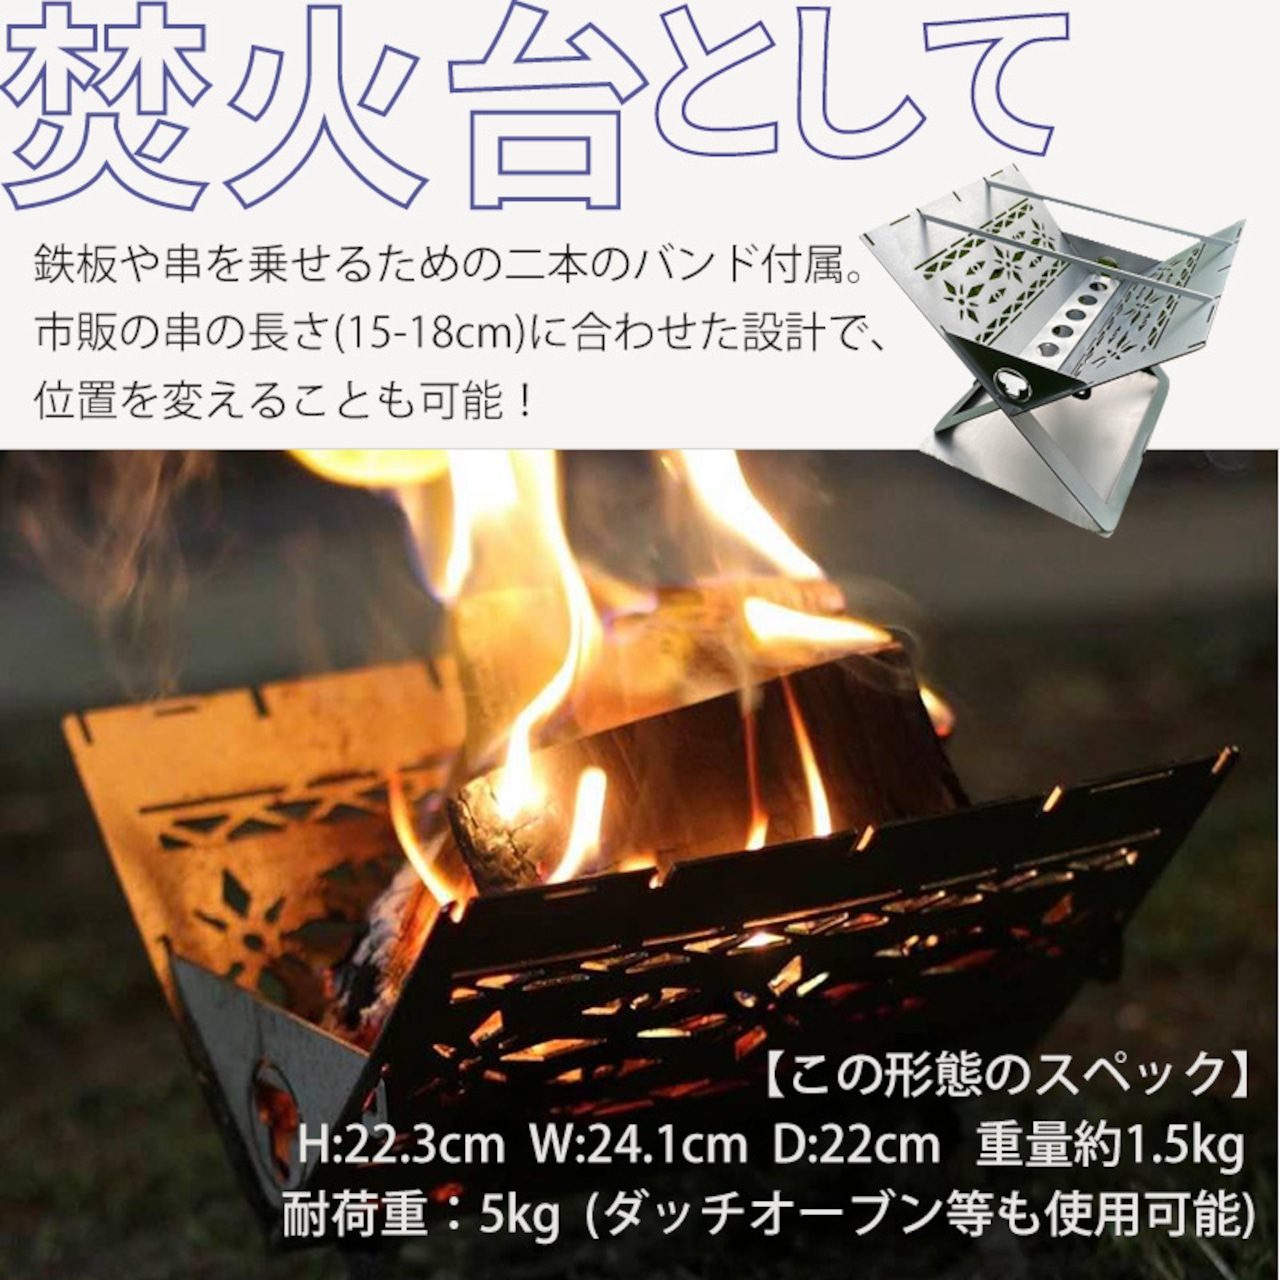 タシロ 3WAYピザ窯 コンパクト ピザ窯 燻製器 焚き火台 収納袋付き